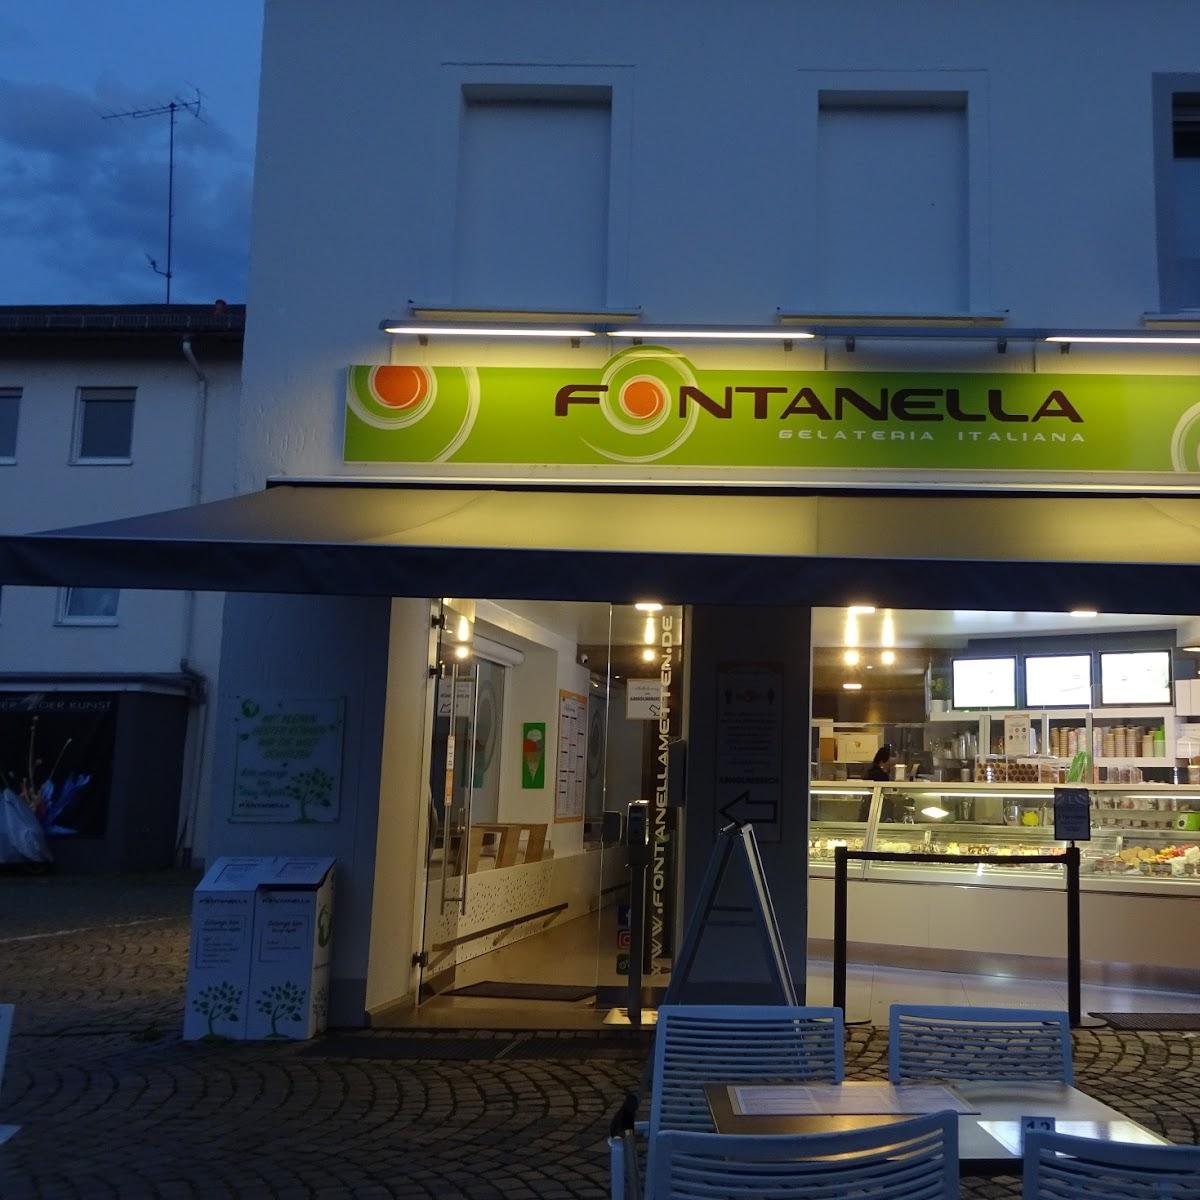 Restaurant "Eisdiele Fontanella" in Metten